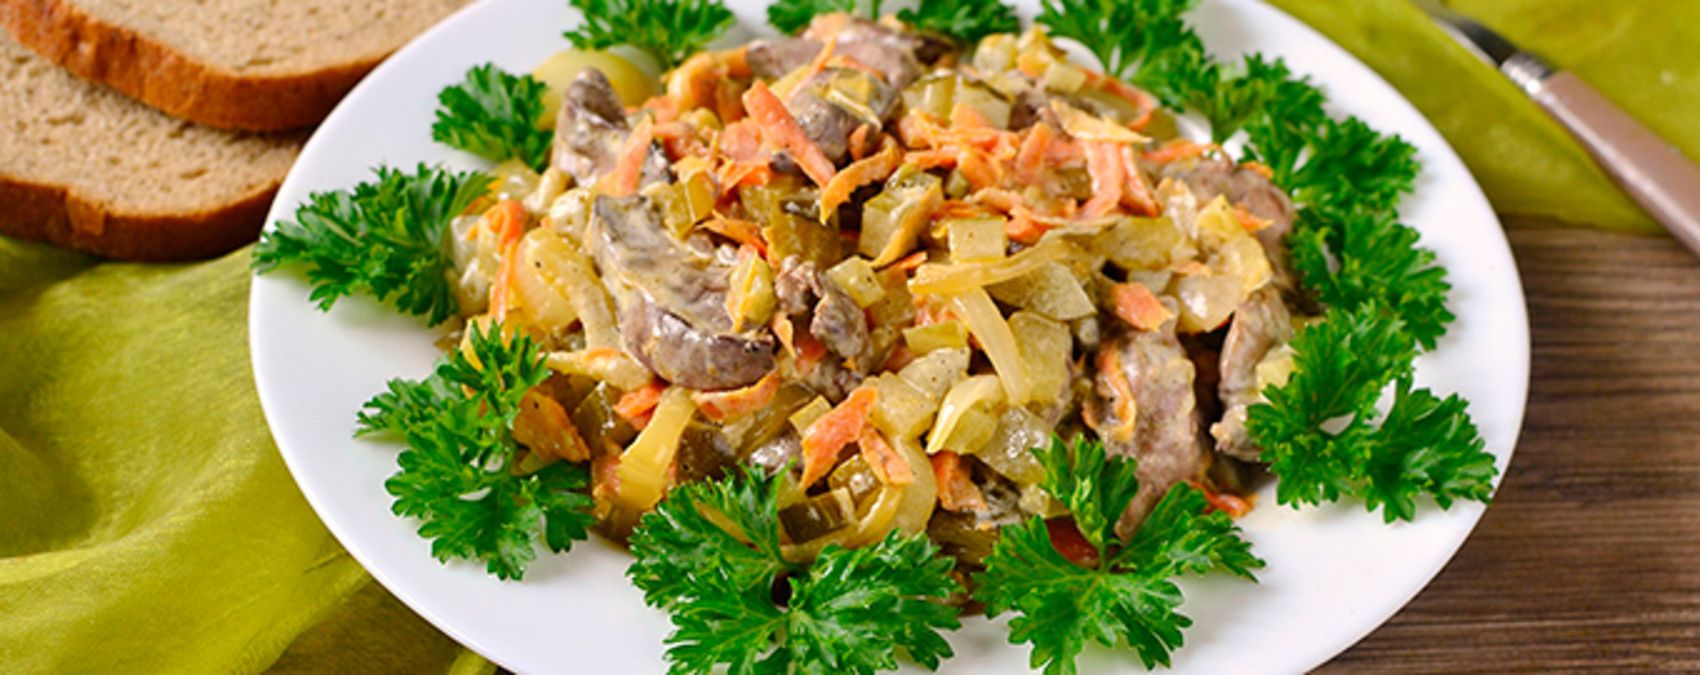 Салат с куриной печенью - приготовьте просто - рецепт с солеными огурцами - Новости Вкусно